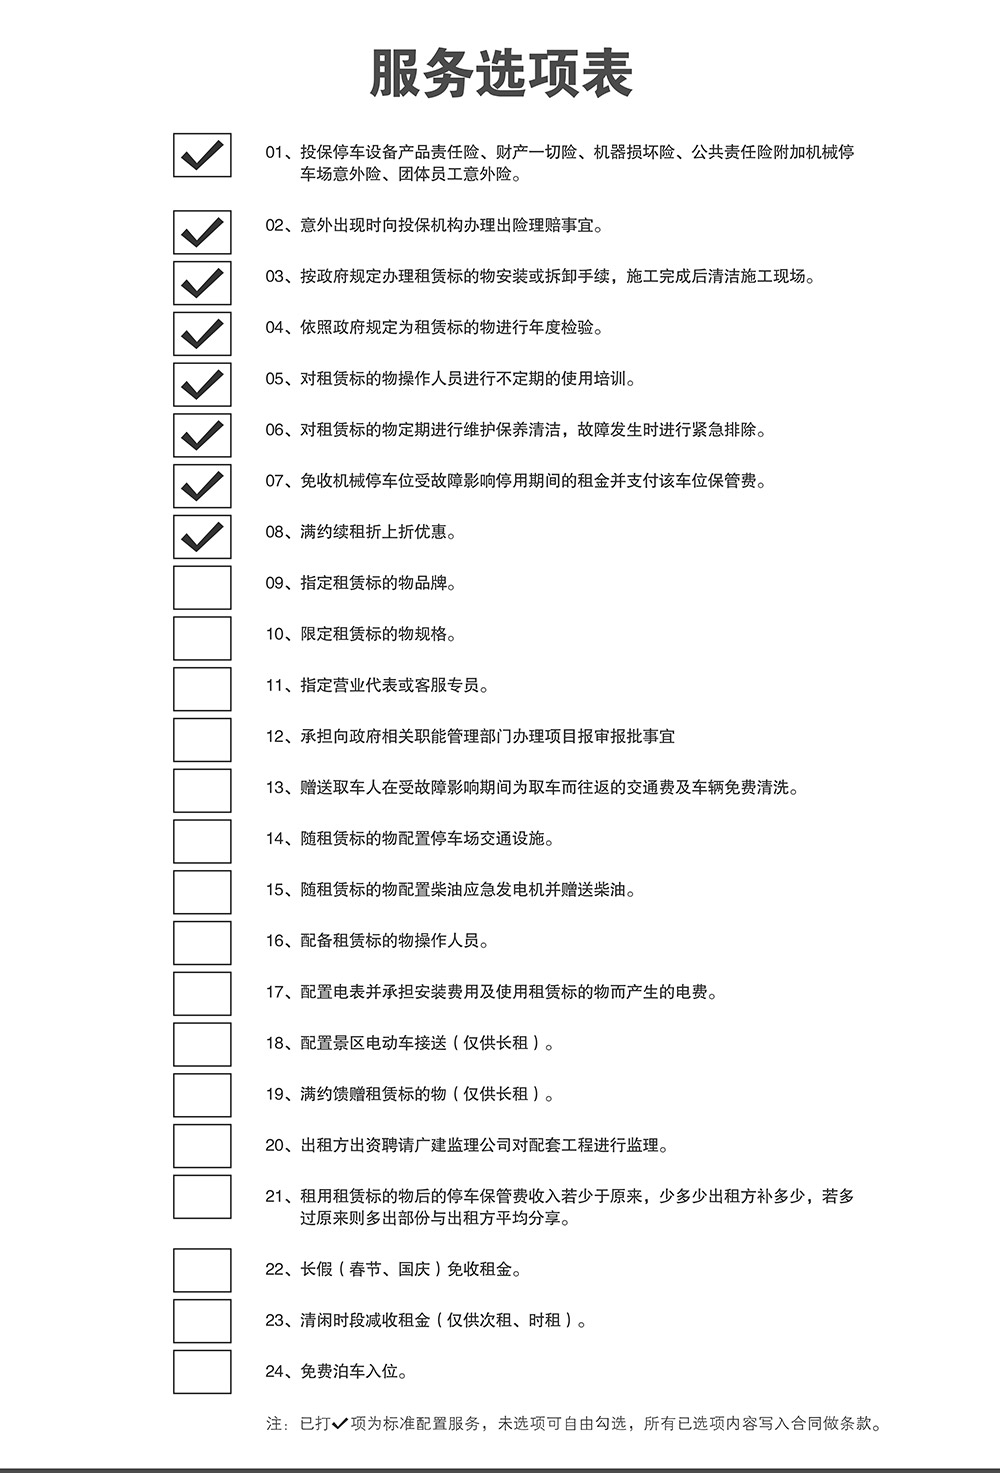 贵州倍莱停车设备租赁服务选项表.jpg